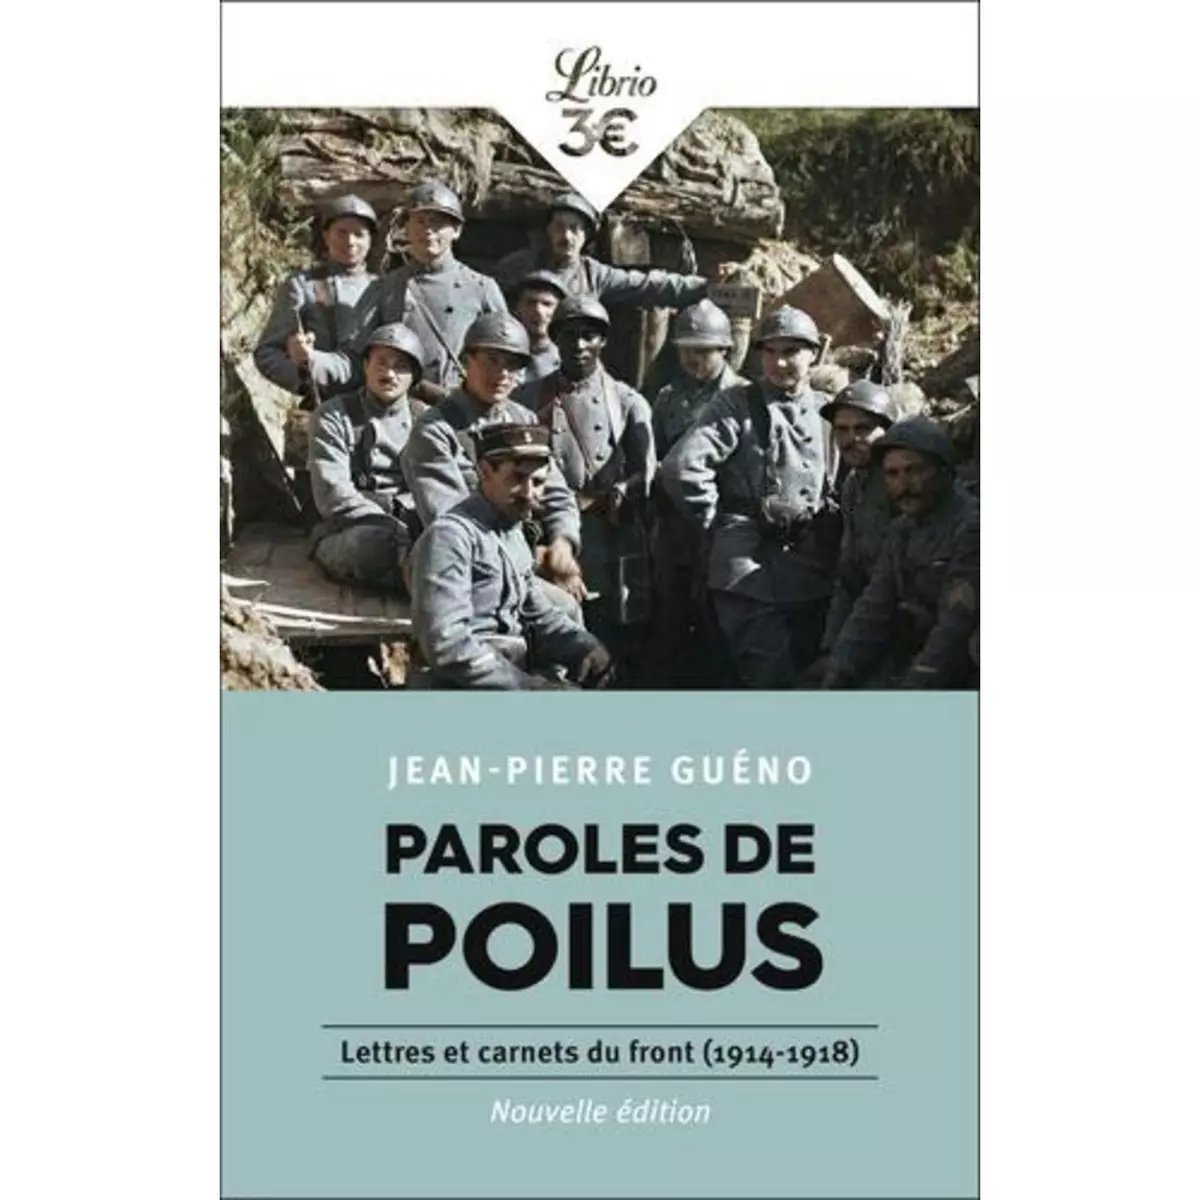  PAROLES DE POILUS. LETTRES ET CARNETS DU FRONT (1914-1918), Guéno Jean-Pierre